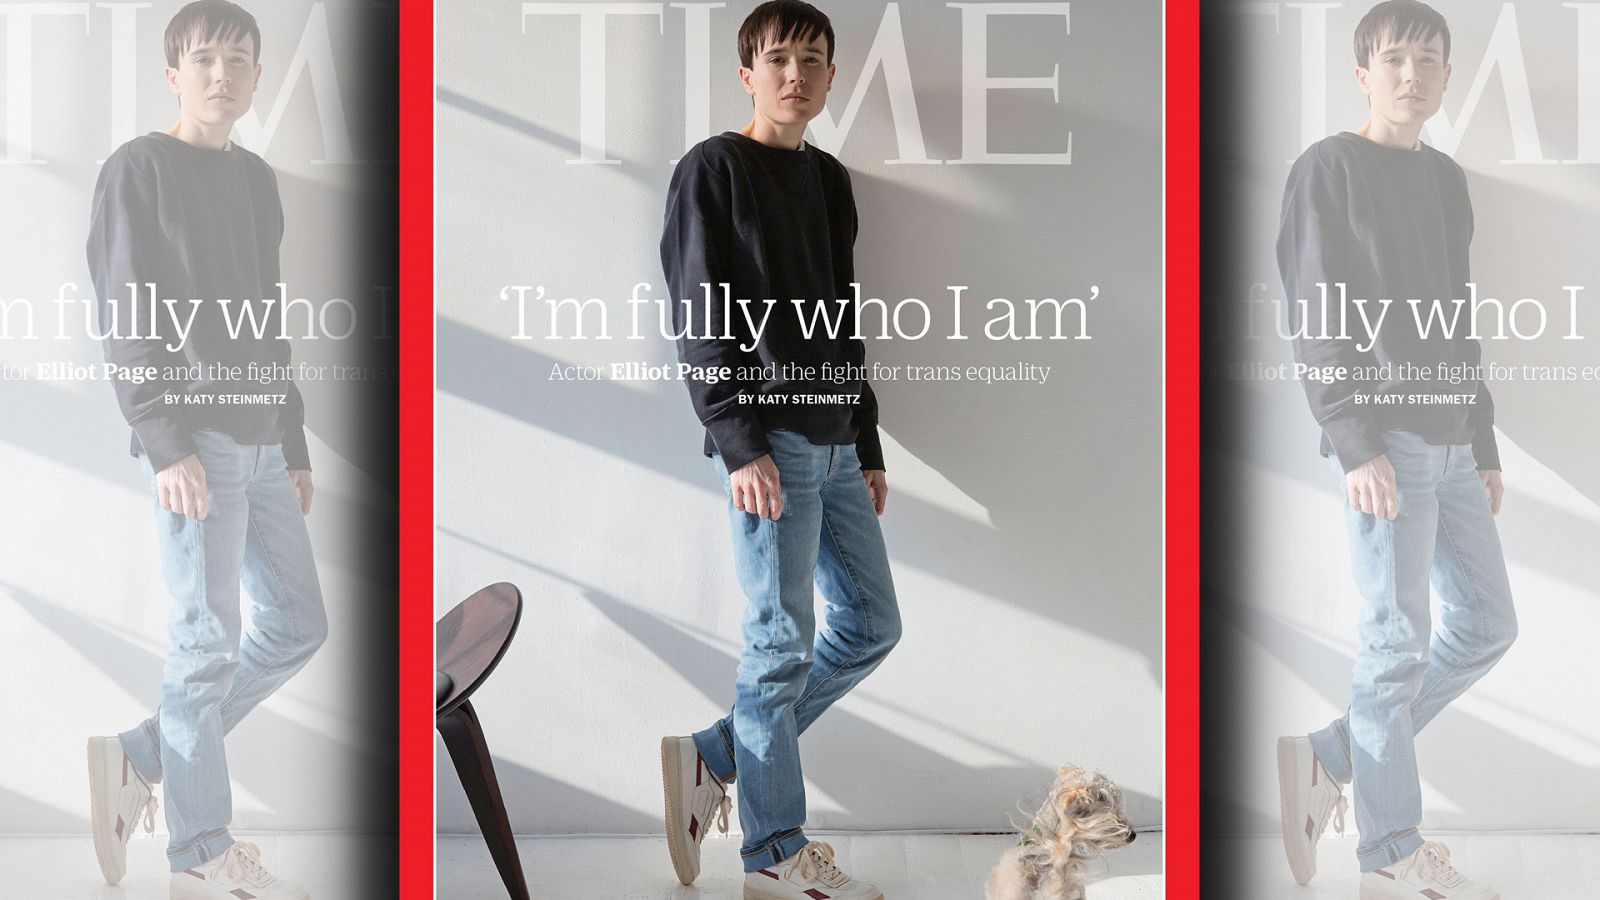 Elliot Page, protagonista de la portada de la revista Time.